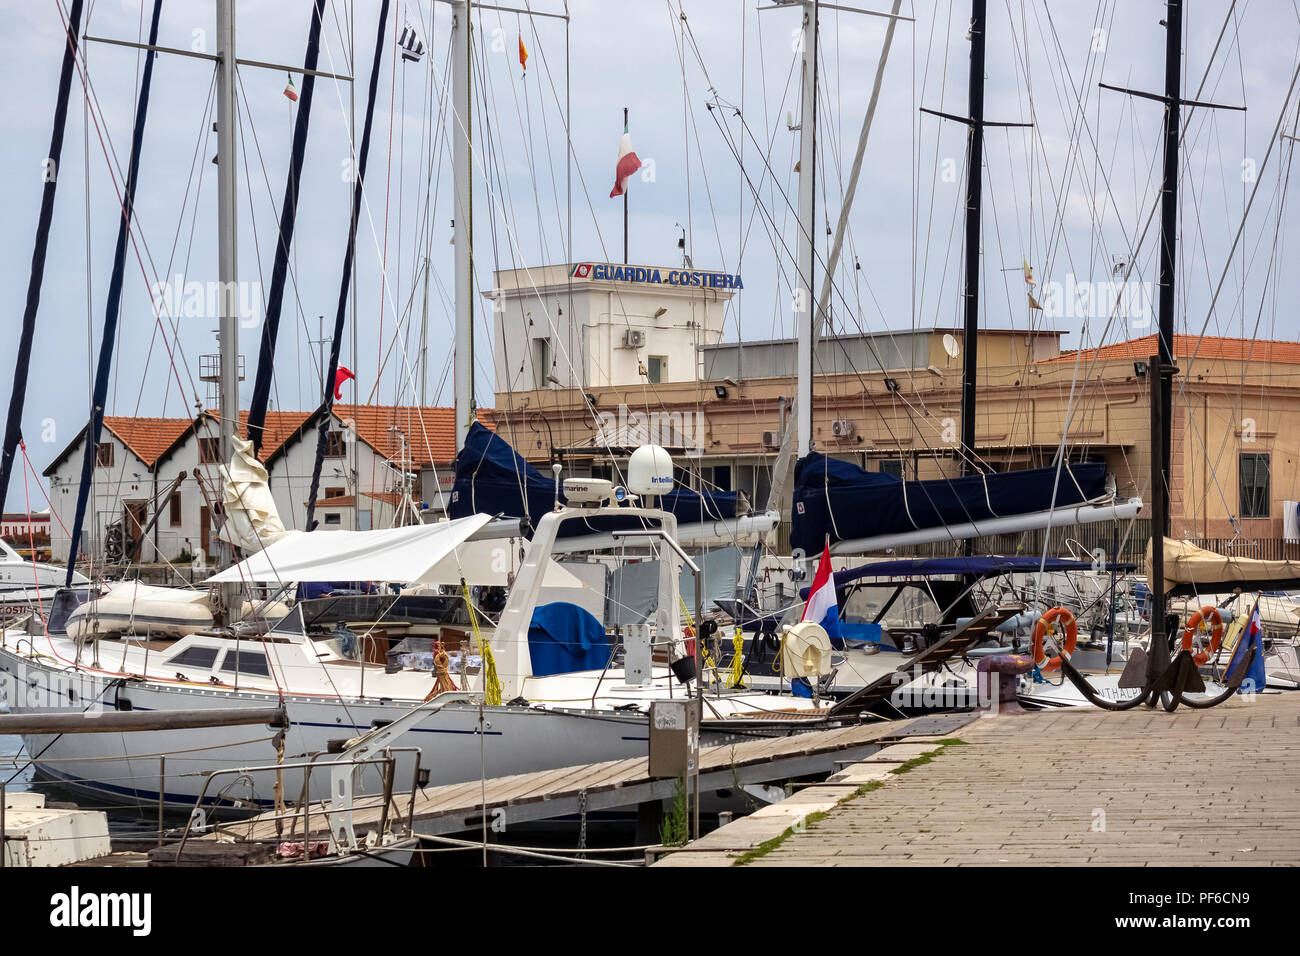 PALERME, SICILE, ITALIE - 21 MAI 2018: Yachts dans le port de plaisance du Vieux Port (la Cala) Banque D'Images